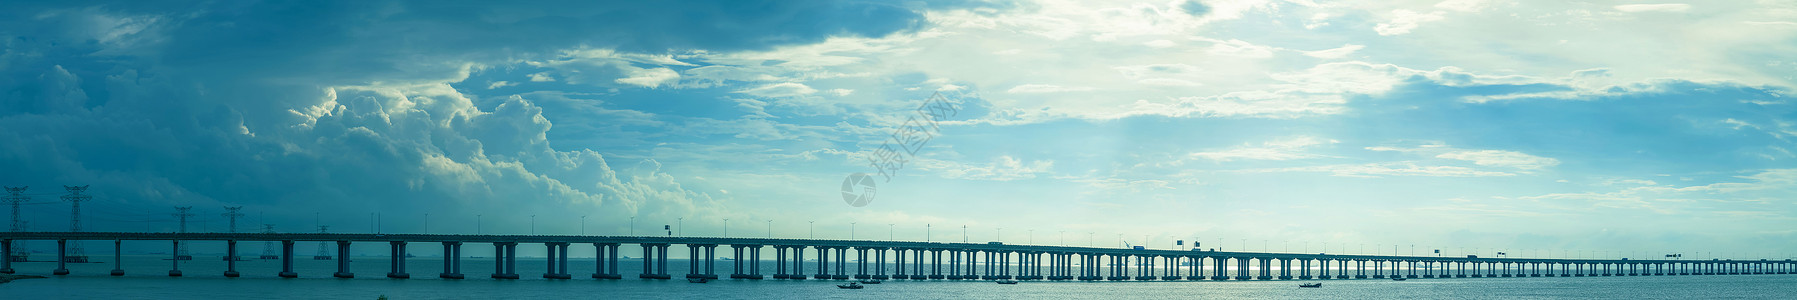 路桥设计高速公路跨海大桥背景